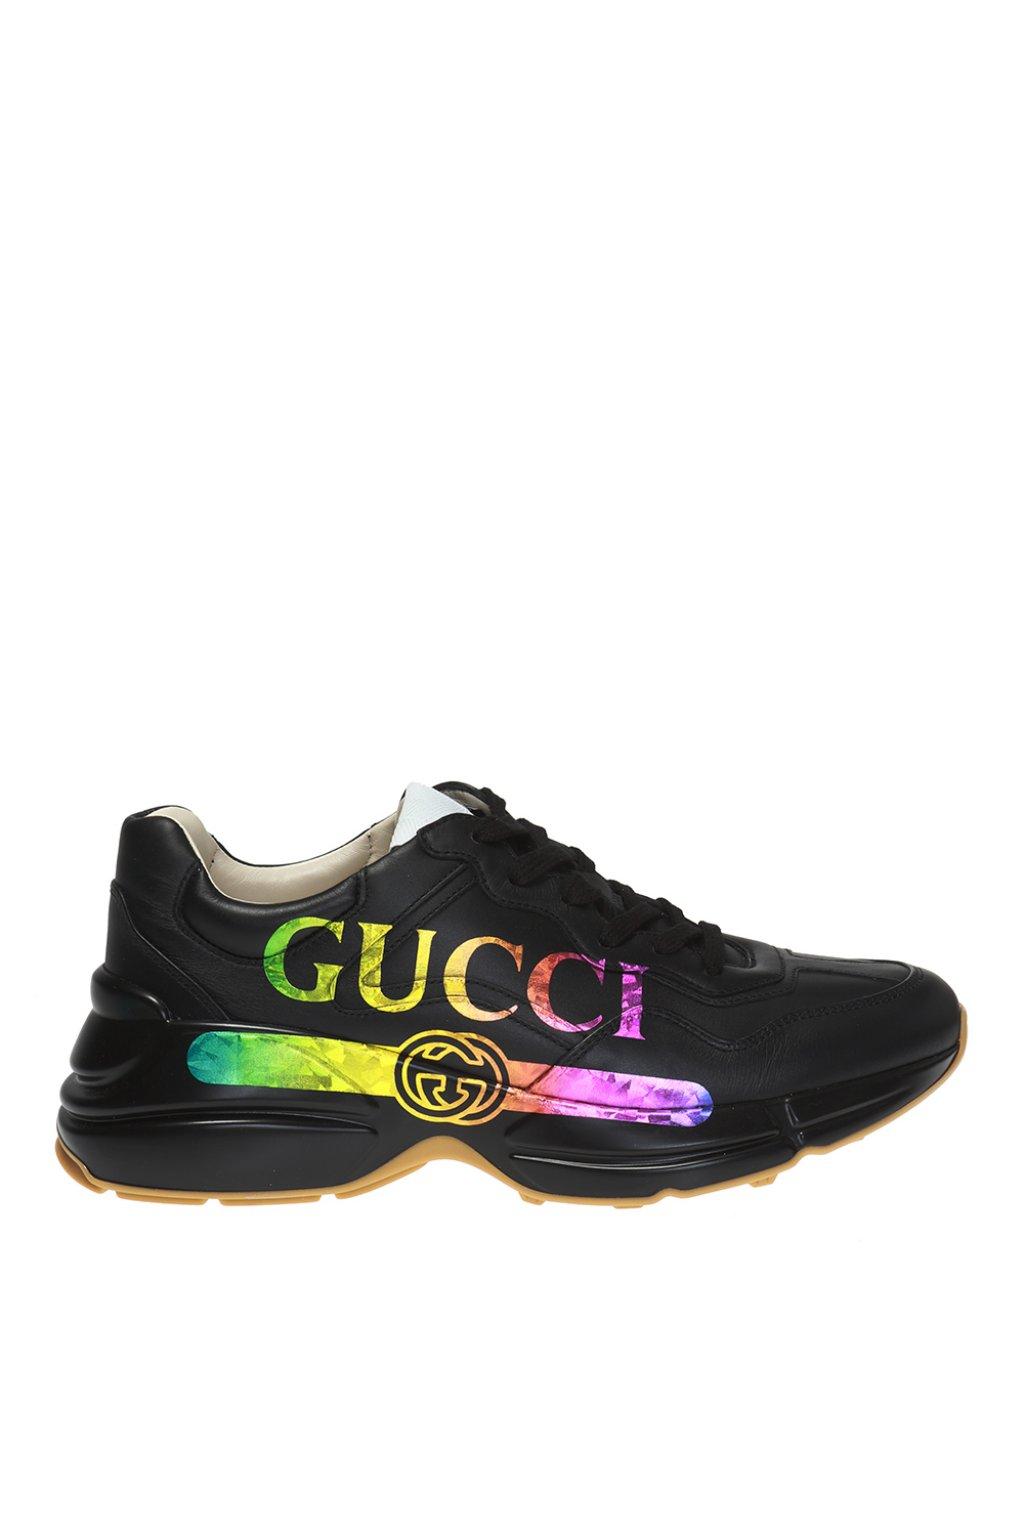 gucci rainbow logo